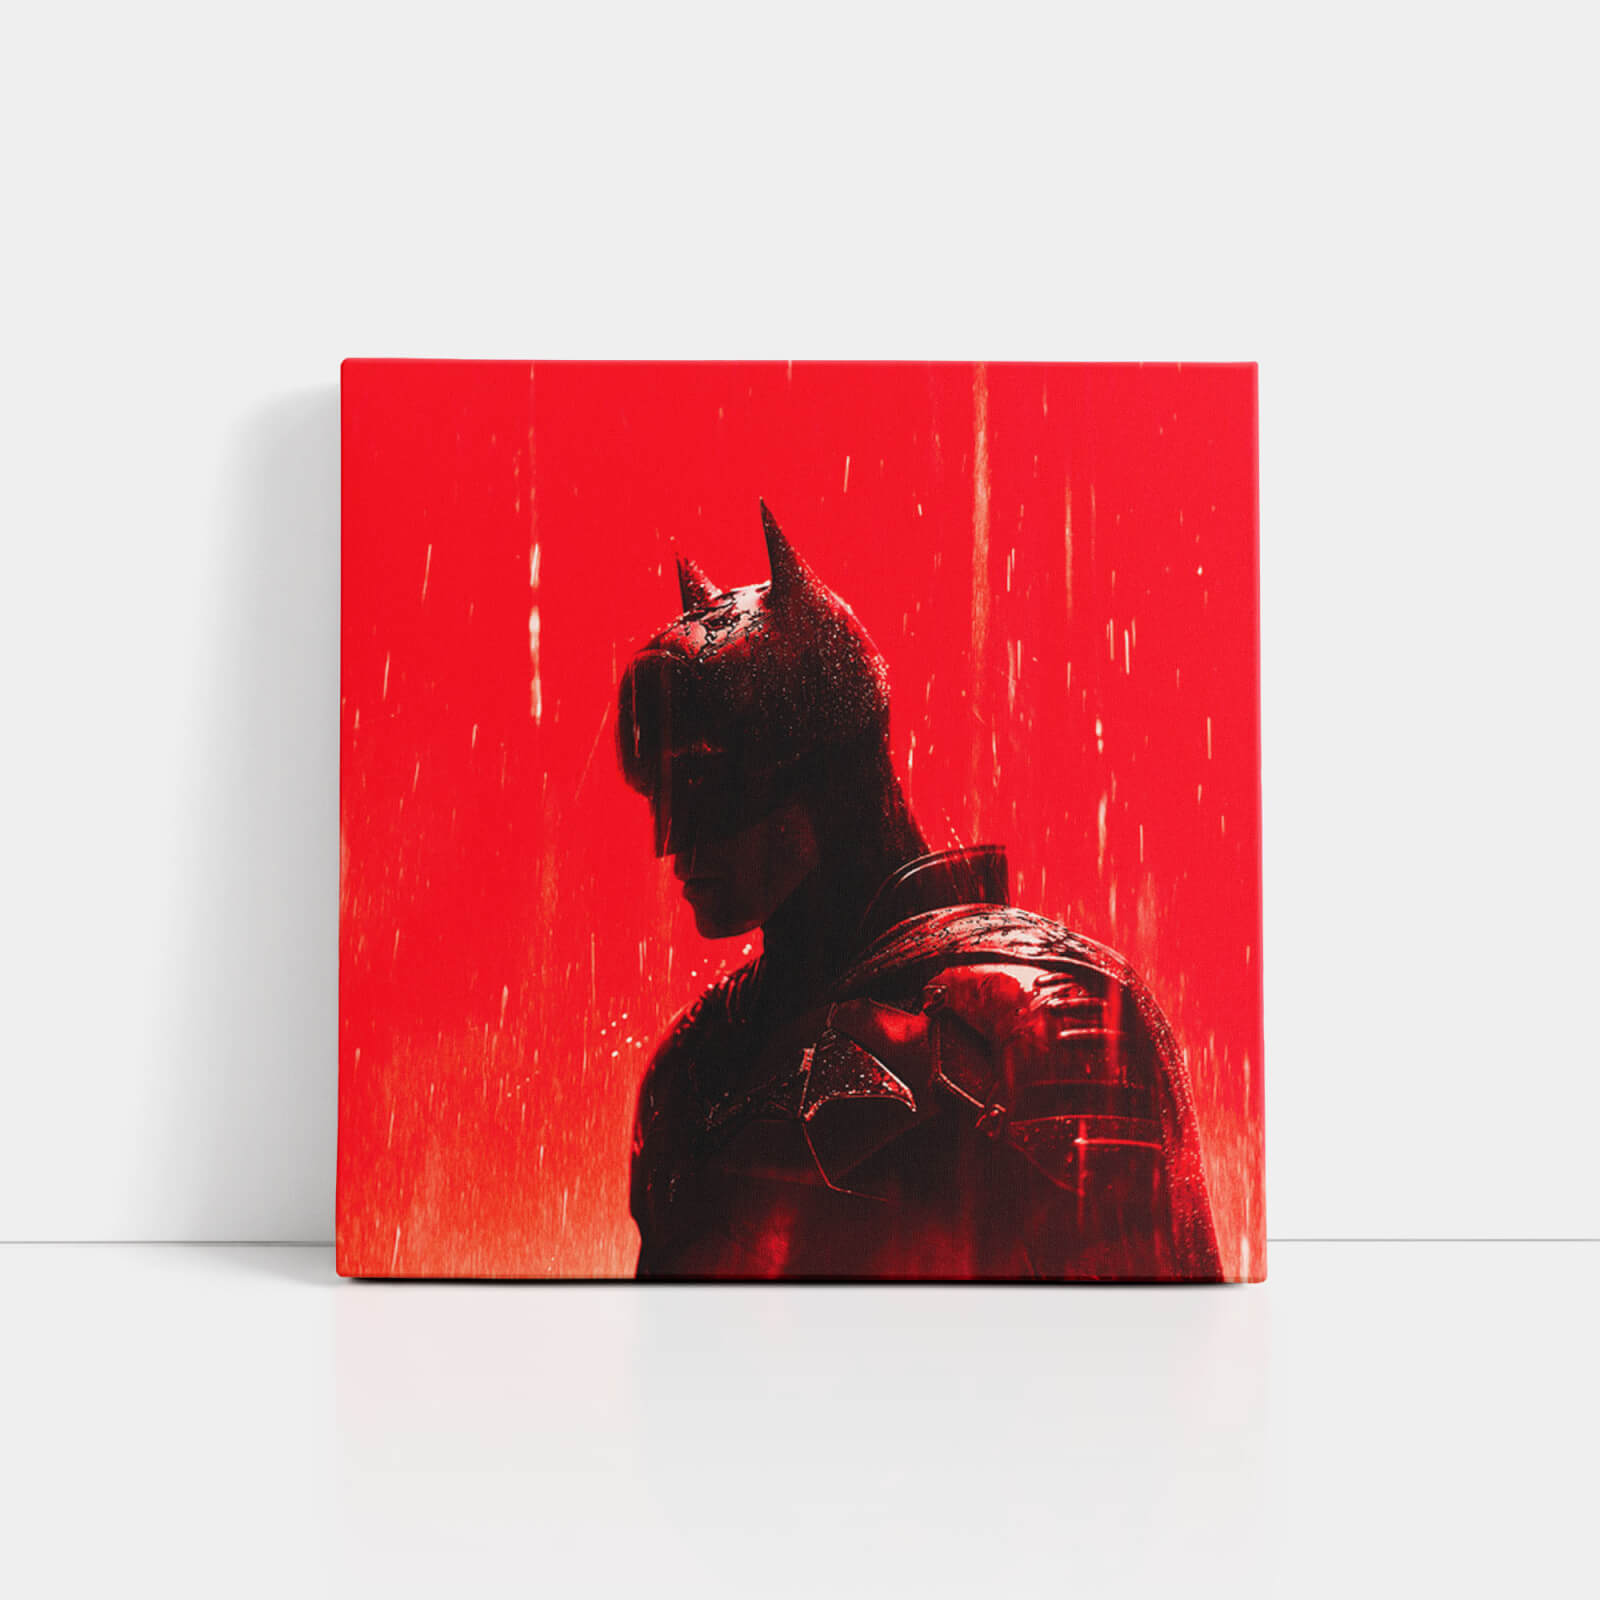 Decorsome x The Batman Gotham Knight Square Canvas - 20x20 inch